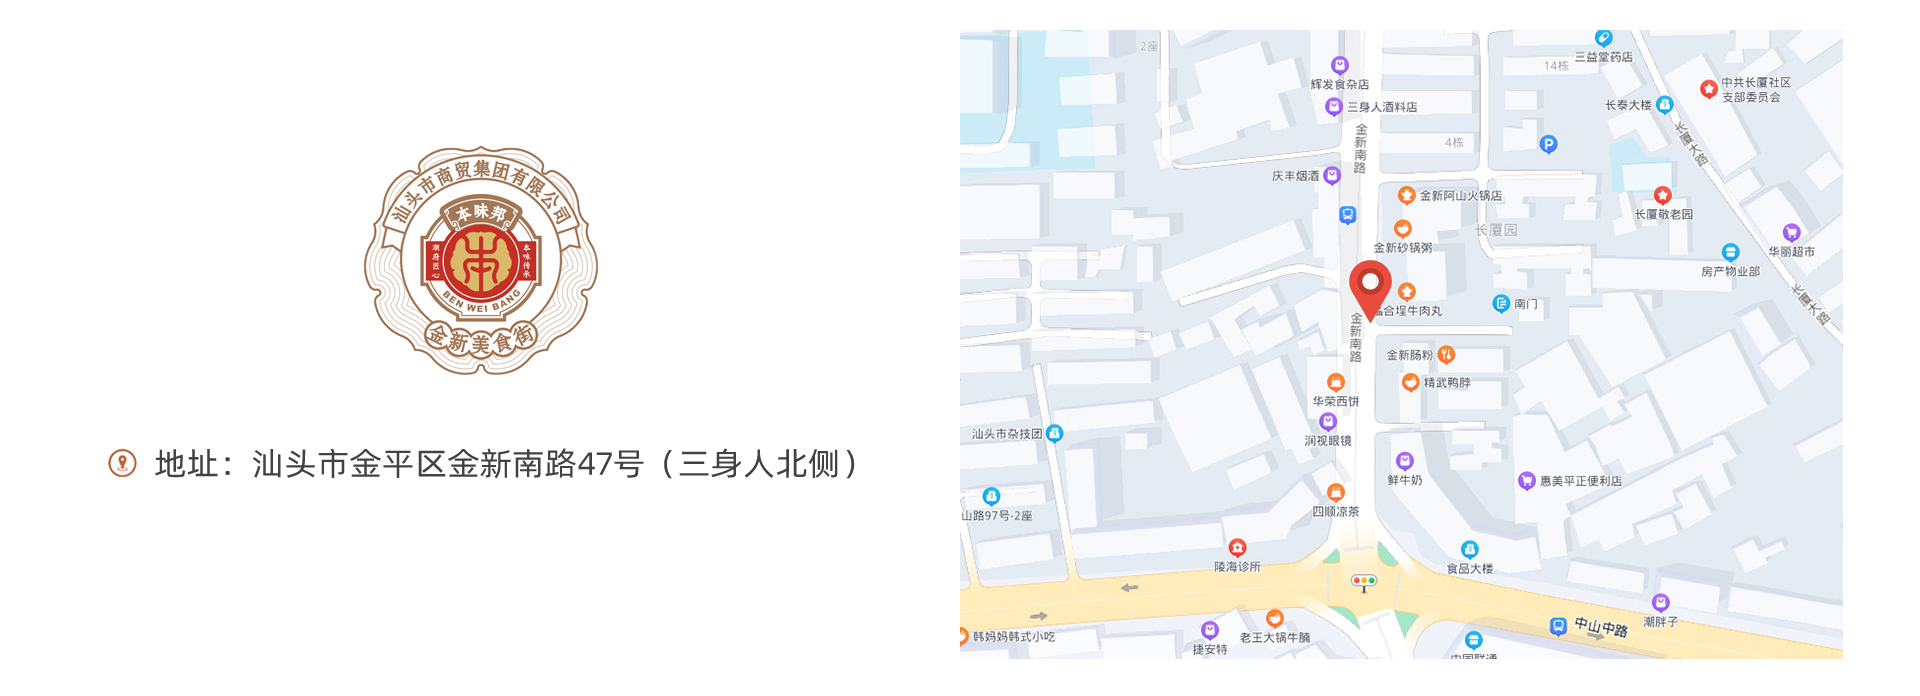 美食街-地图0304.png